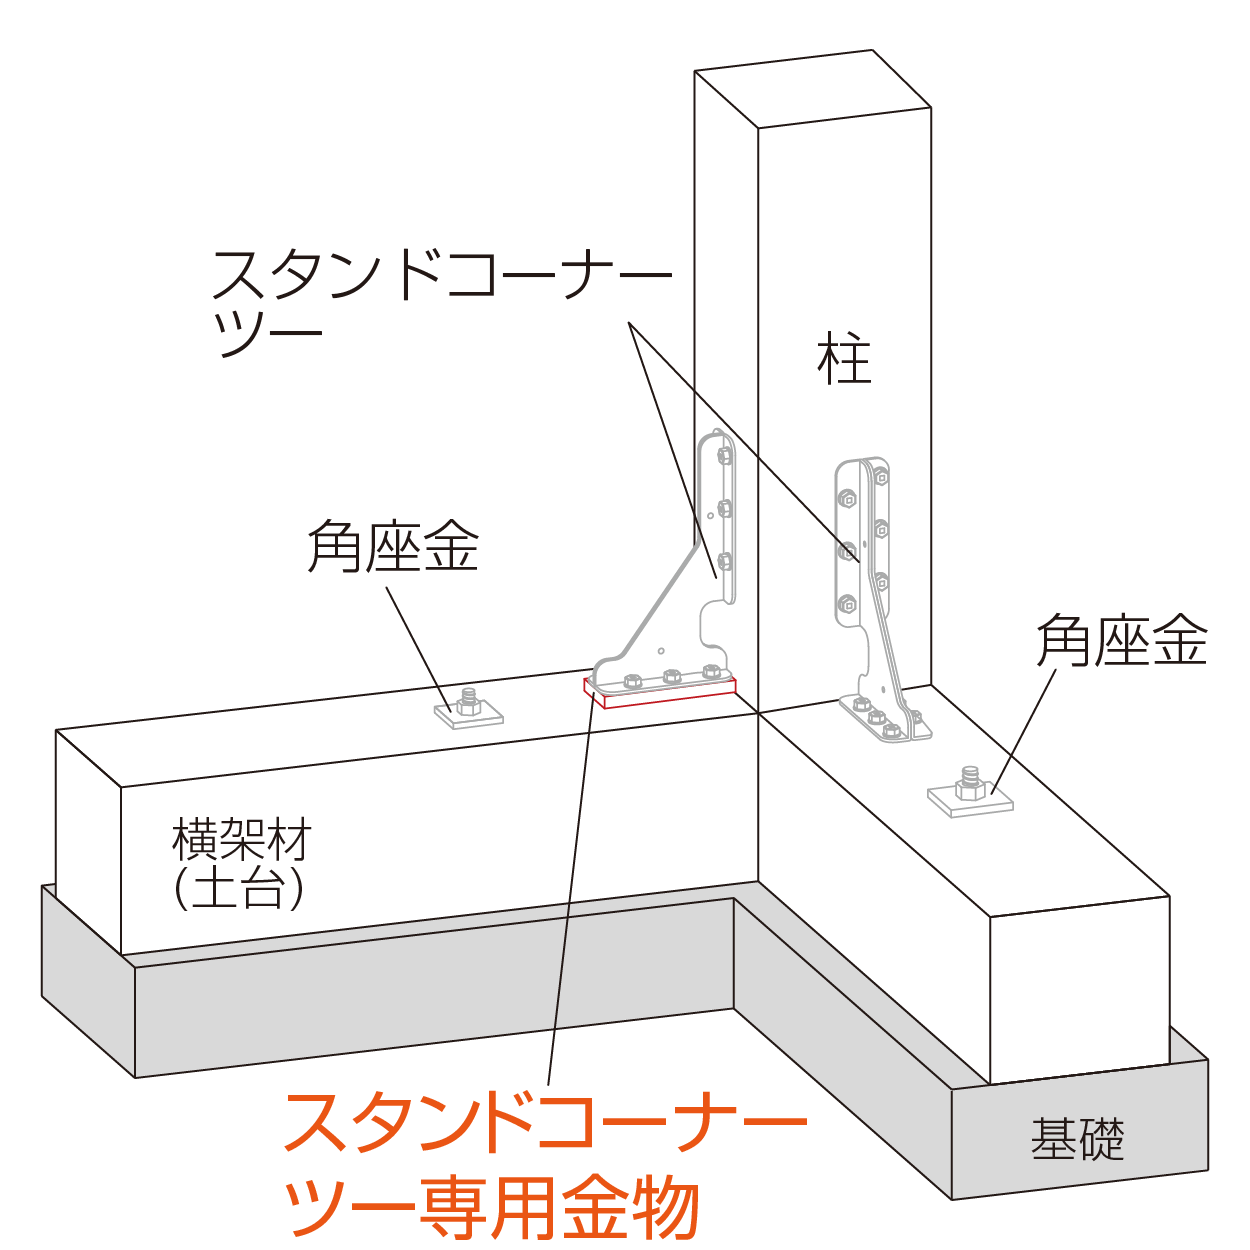 スタンドコーナーツー専用座金 柱脚使用例（隅柱）